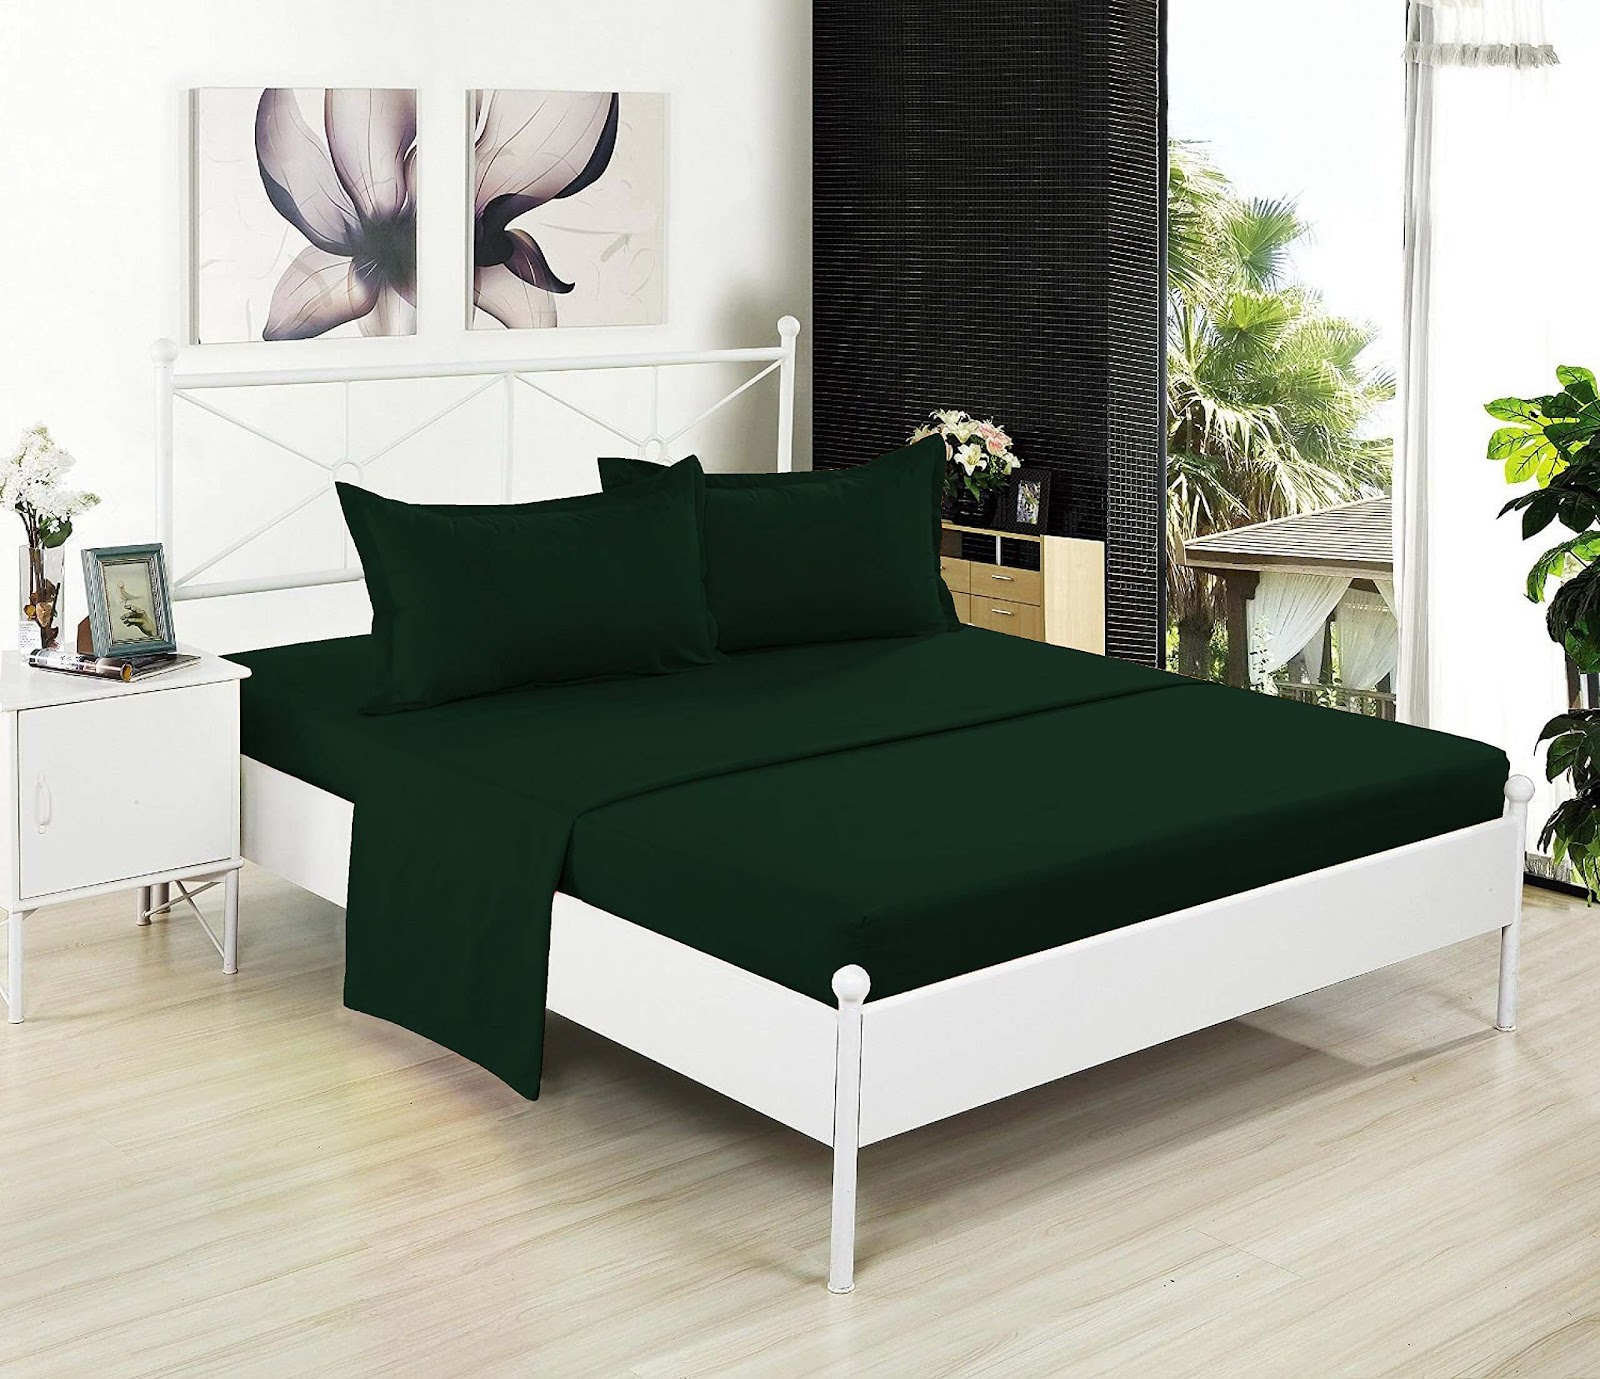 Mẫu drap giường xanh lá đậm 6